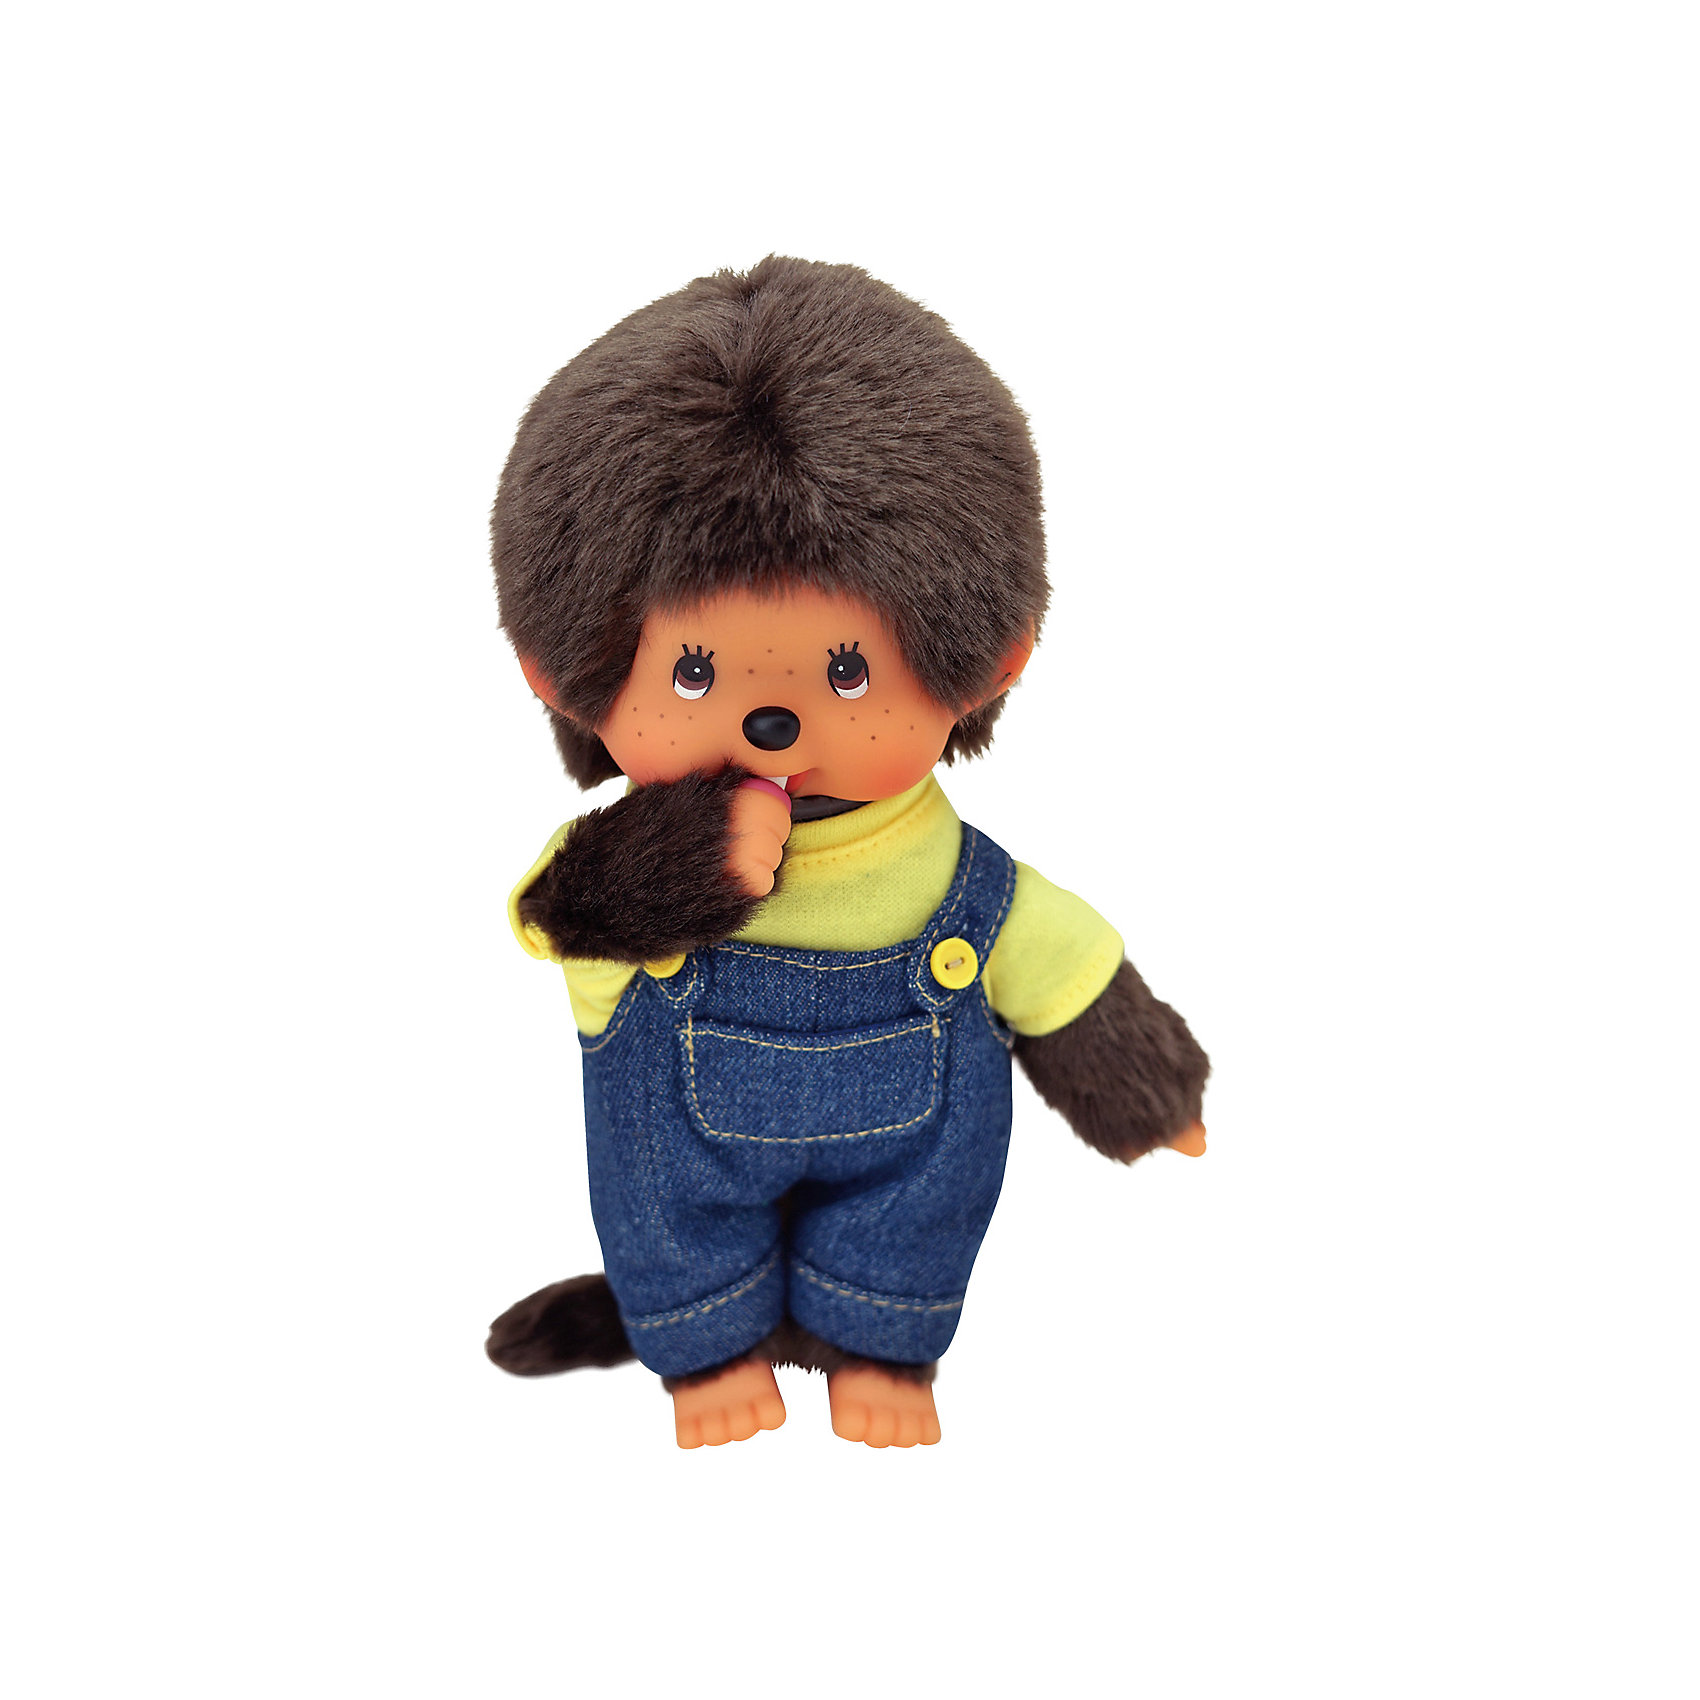 фото Мягкая игрушка Monchhichi Мончичи, мальчик в комбинезоне и желтой футболке, 20 см